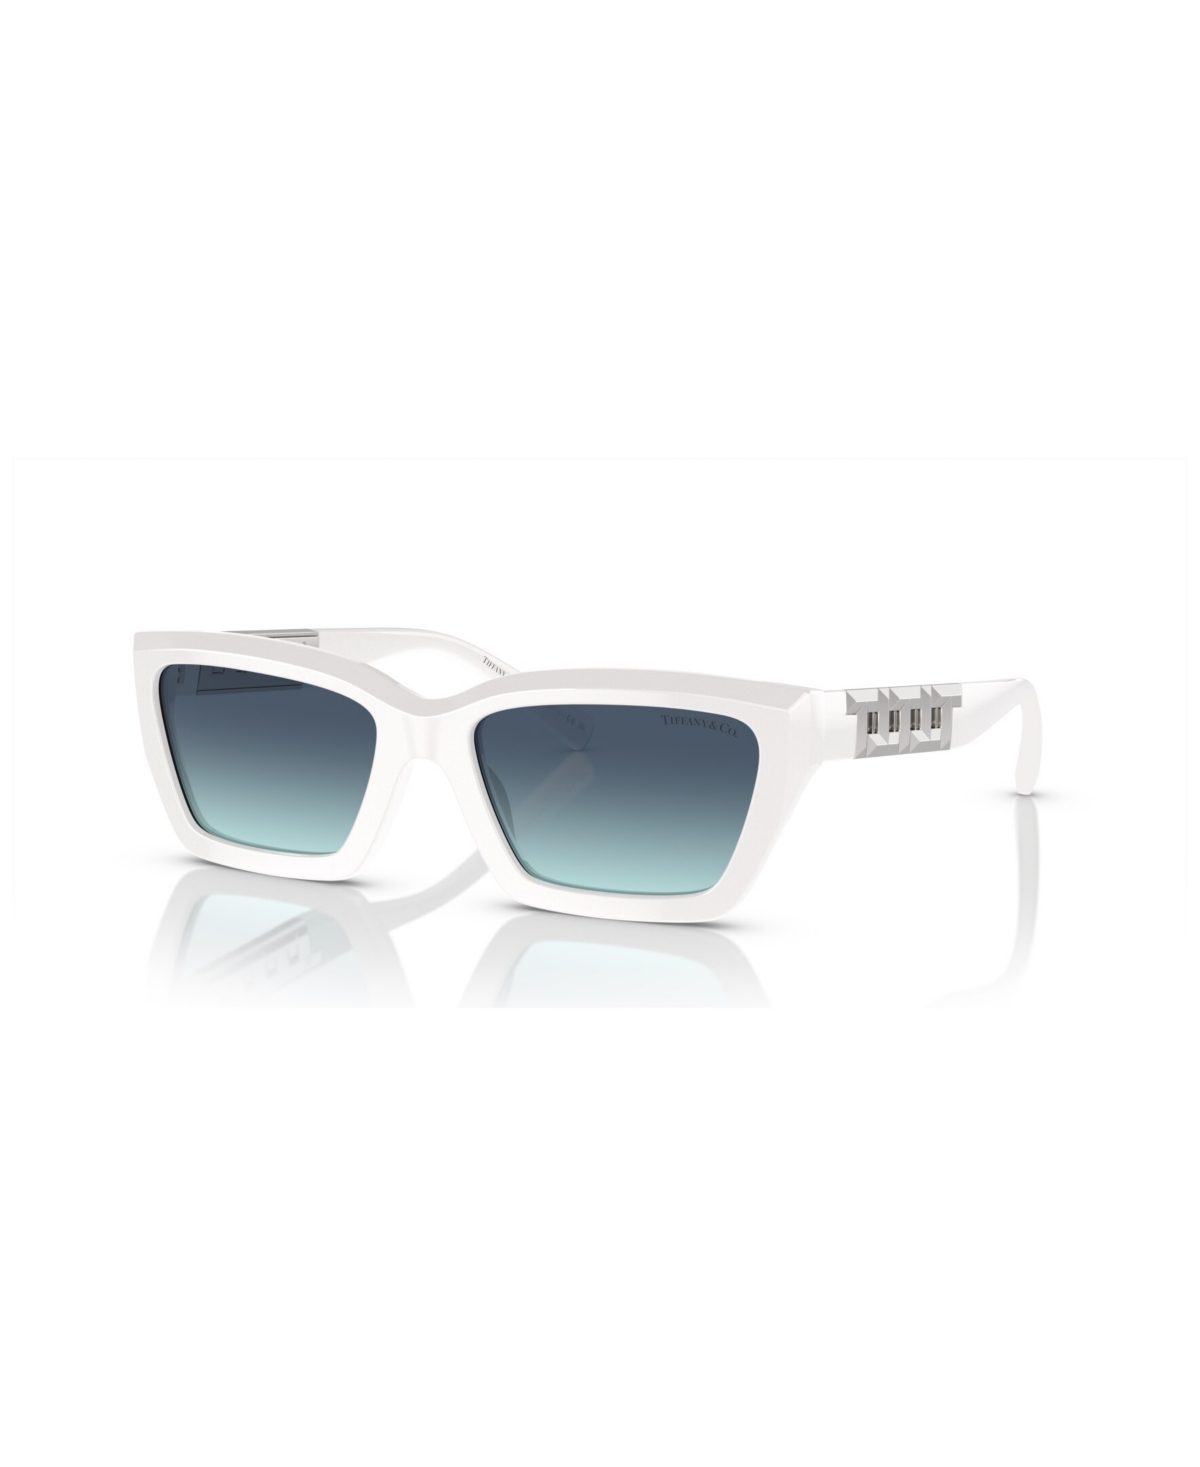 Tiffany & Co Women's Sunglasses Tf4213 In Bright White